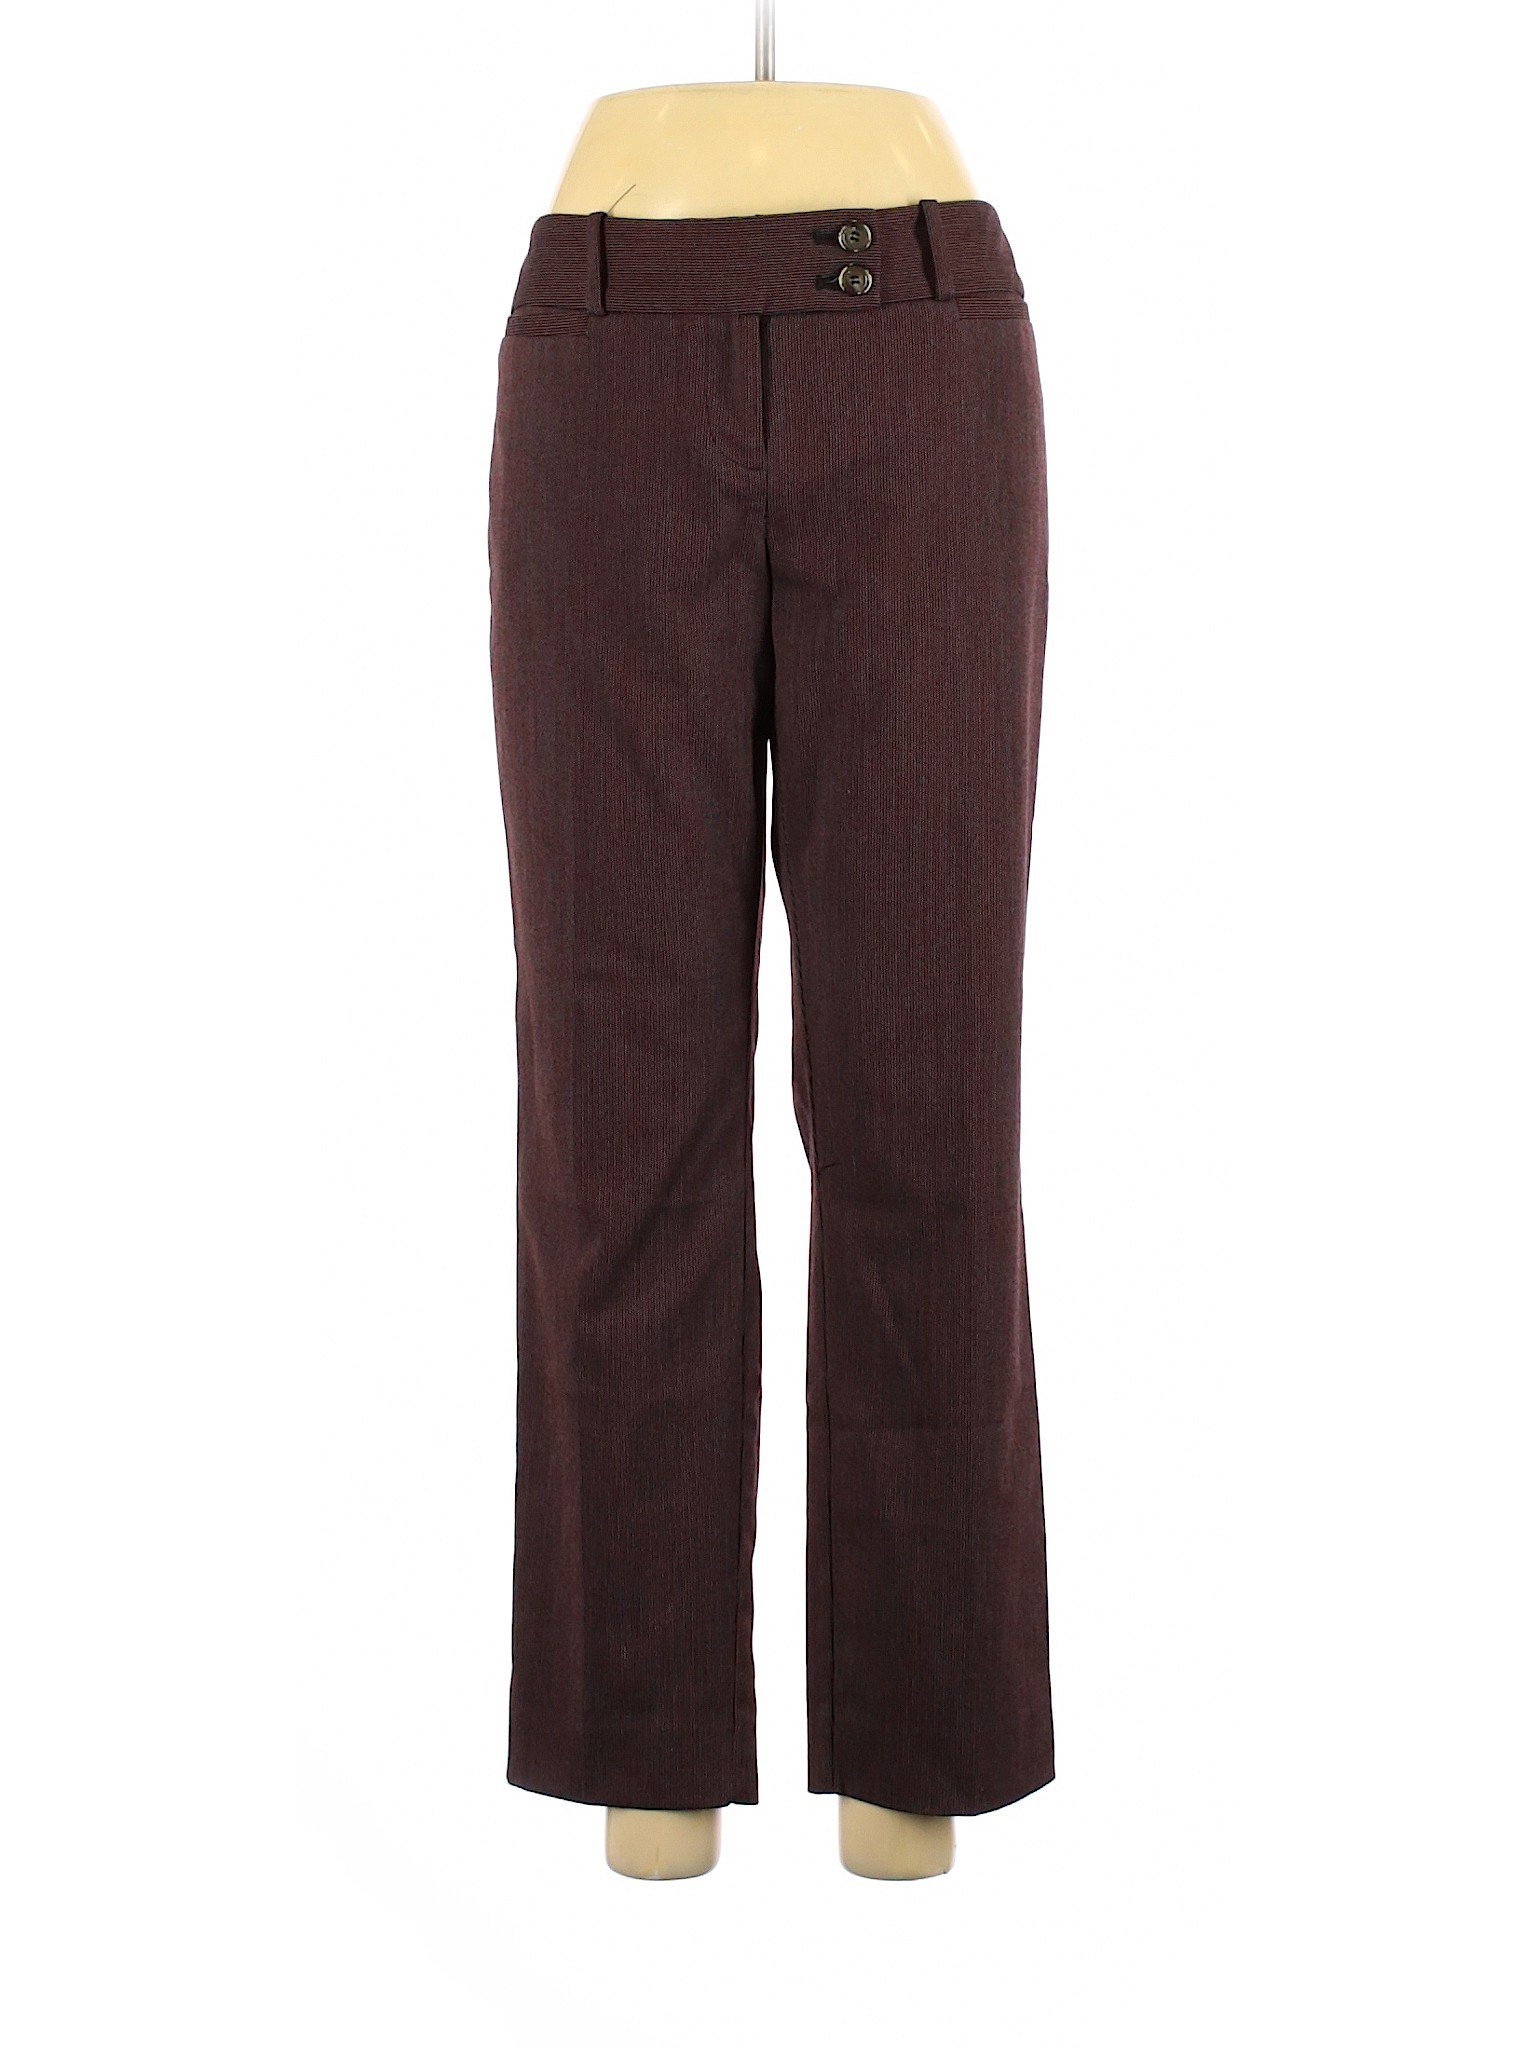 The Limited Women Purple Dress Pants 8 | eBay